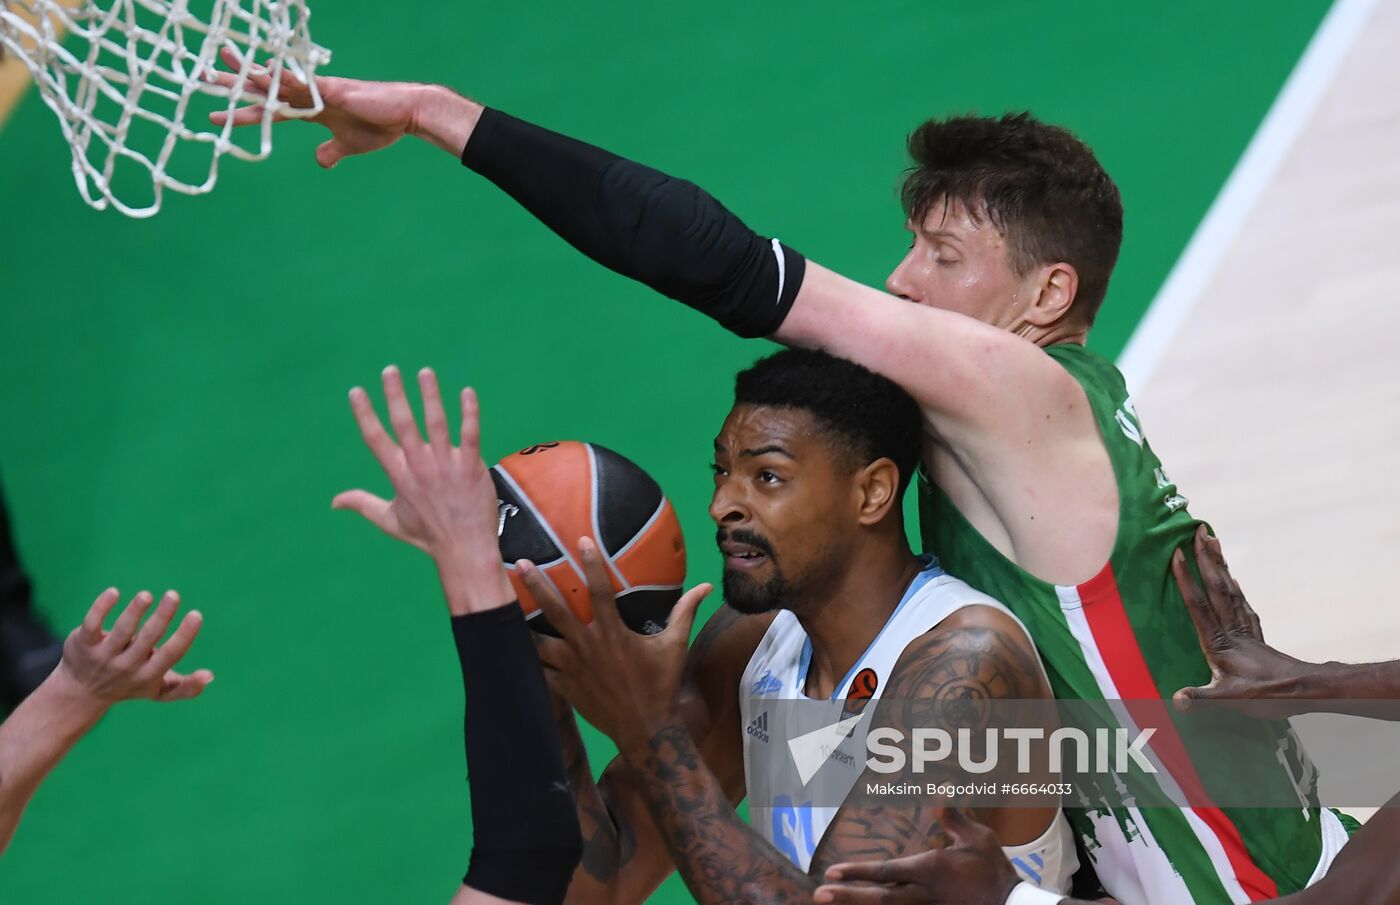 Russia Basketball Euroleague UNICS - Zenit